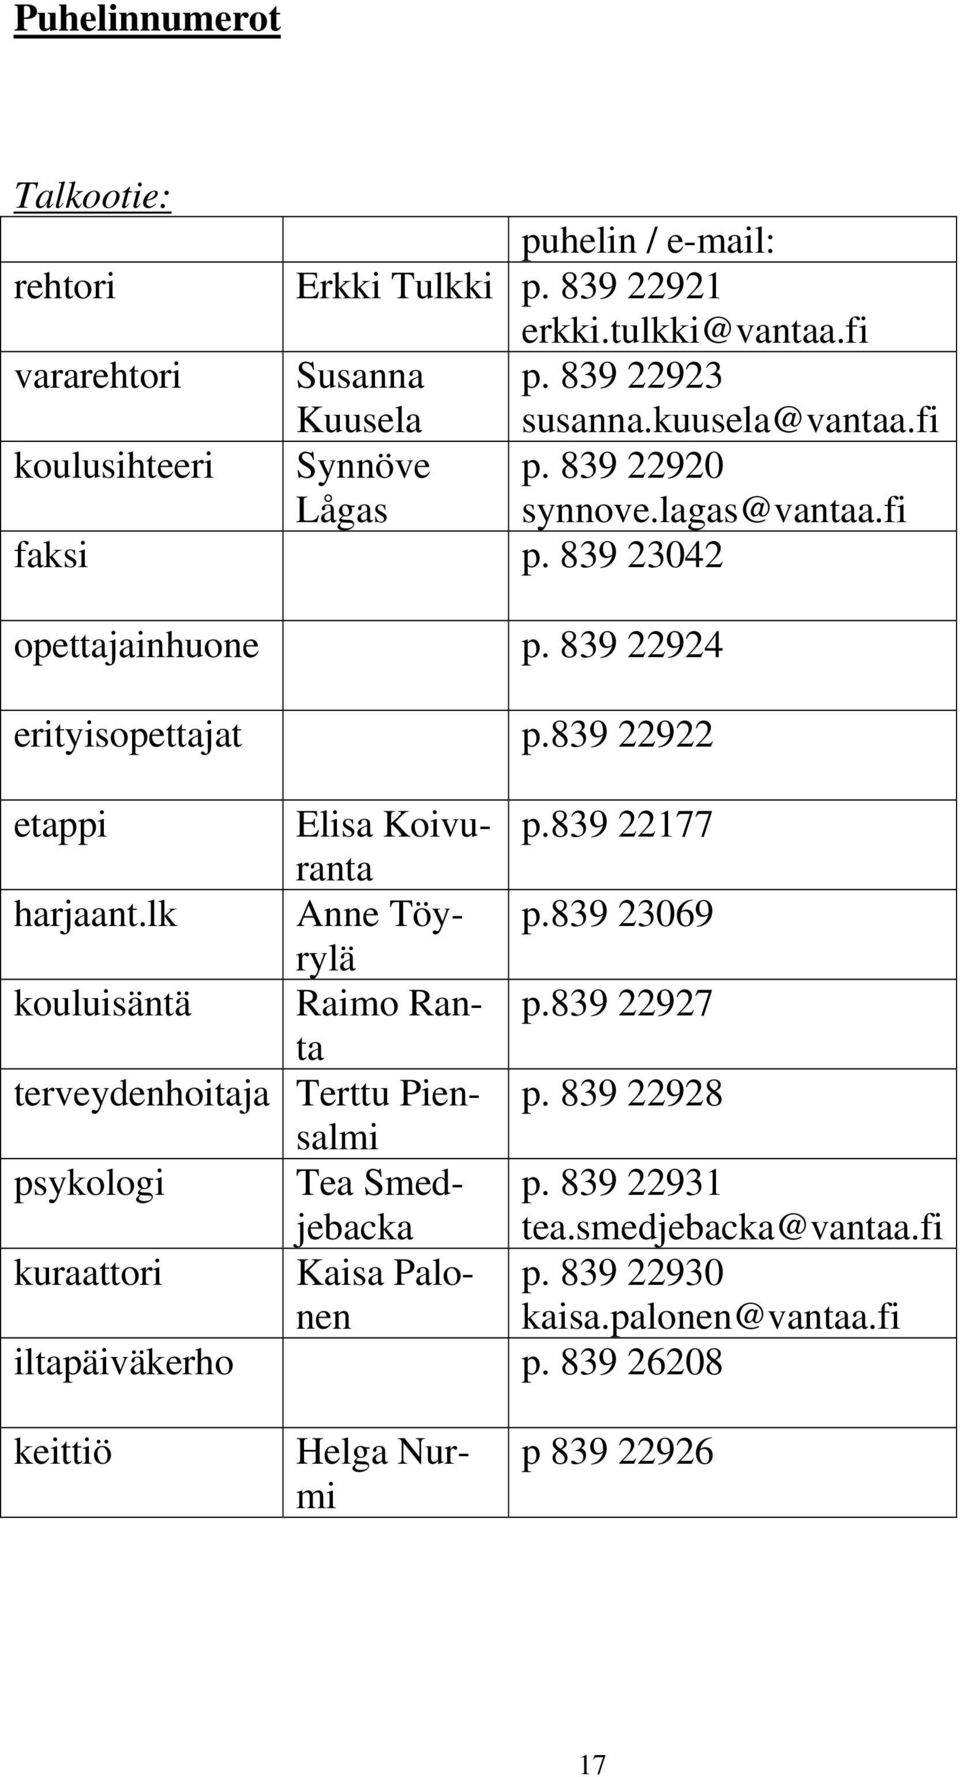 839 22922 etappi Elisa Koivuranta p.839 22177 harjaant.lk Anne Töyrylä p.839 23069 kouluisäntä Raimo Ranta p.839 22927 terveydenhoitaja Terttu Piensalmi p.